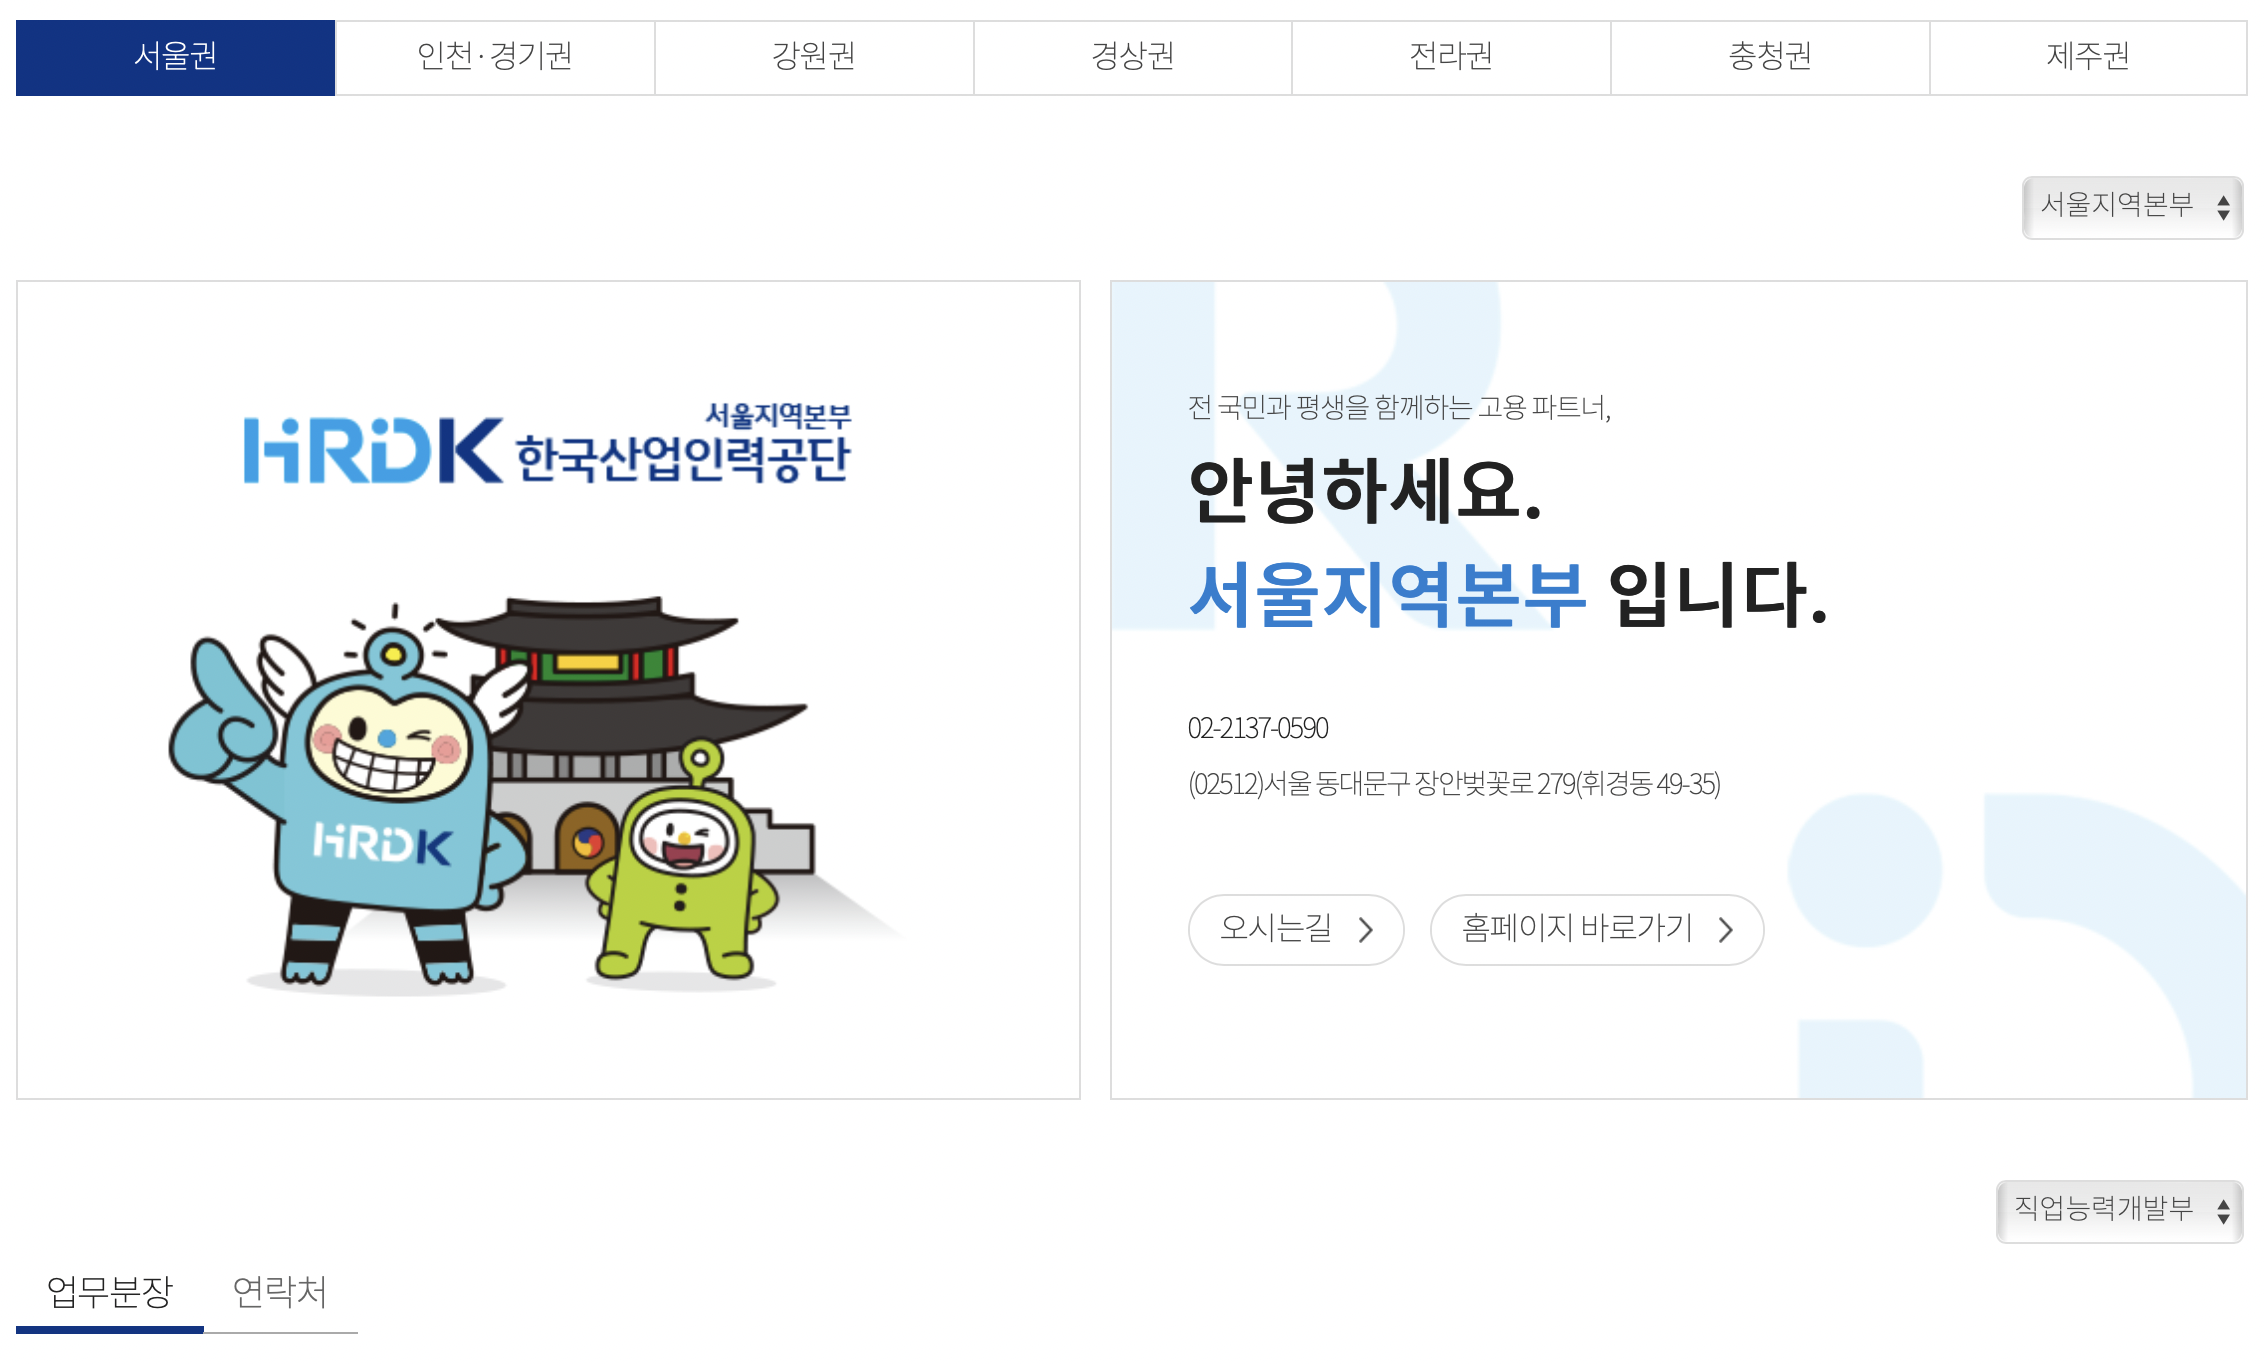 서울 한국산업인력공단 홈페이지 및 연락처